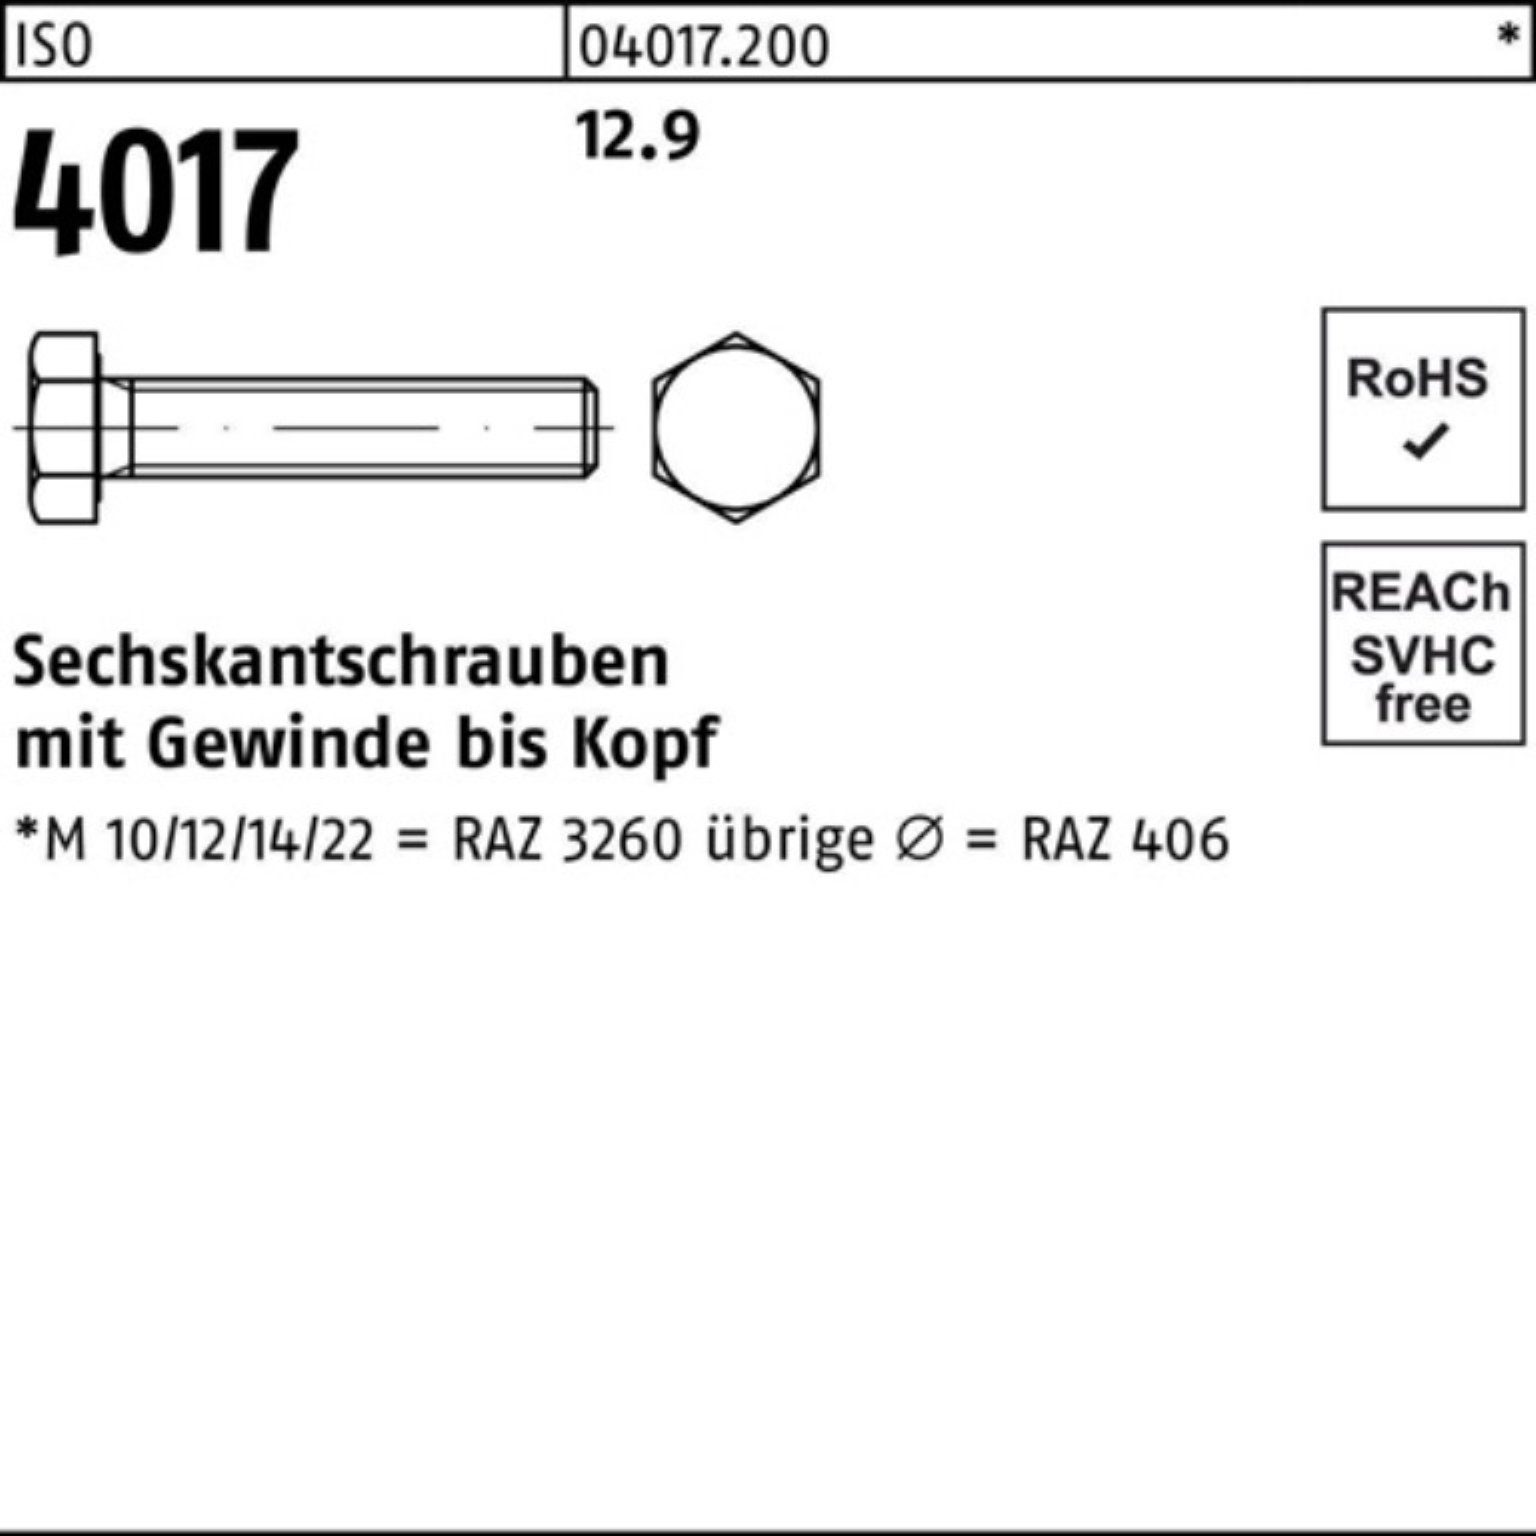 Hochstufung Bufab Sechskantschraube 200er 40 M8x 45 4017 12.9 Stück Sechskantschraube 200 ISO ISO Pack VG